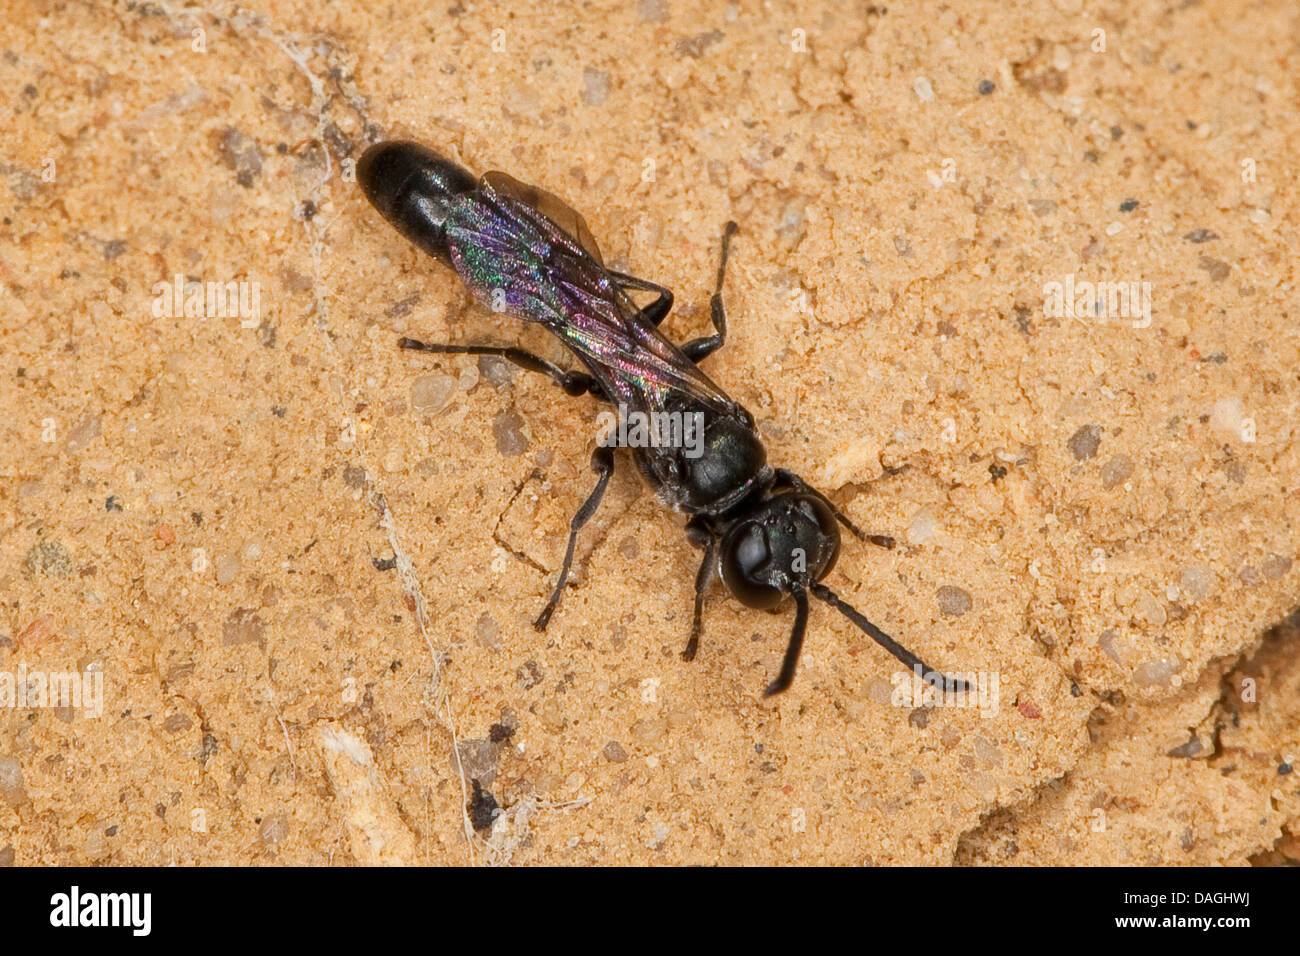 Organ Pipe mud dauber, digger wasp (Trypoxylon spec.), sobre el terreno, Alemania Foto de stock